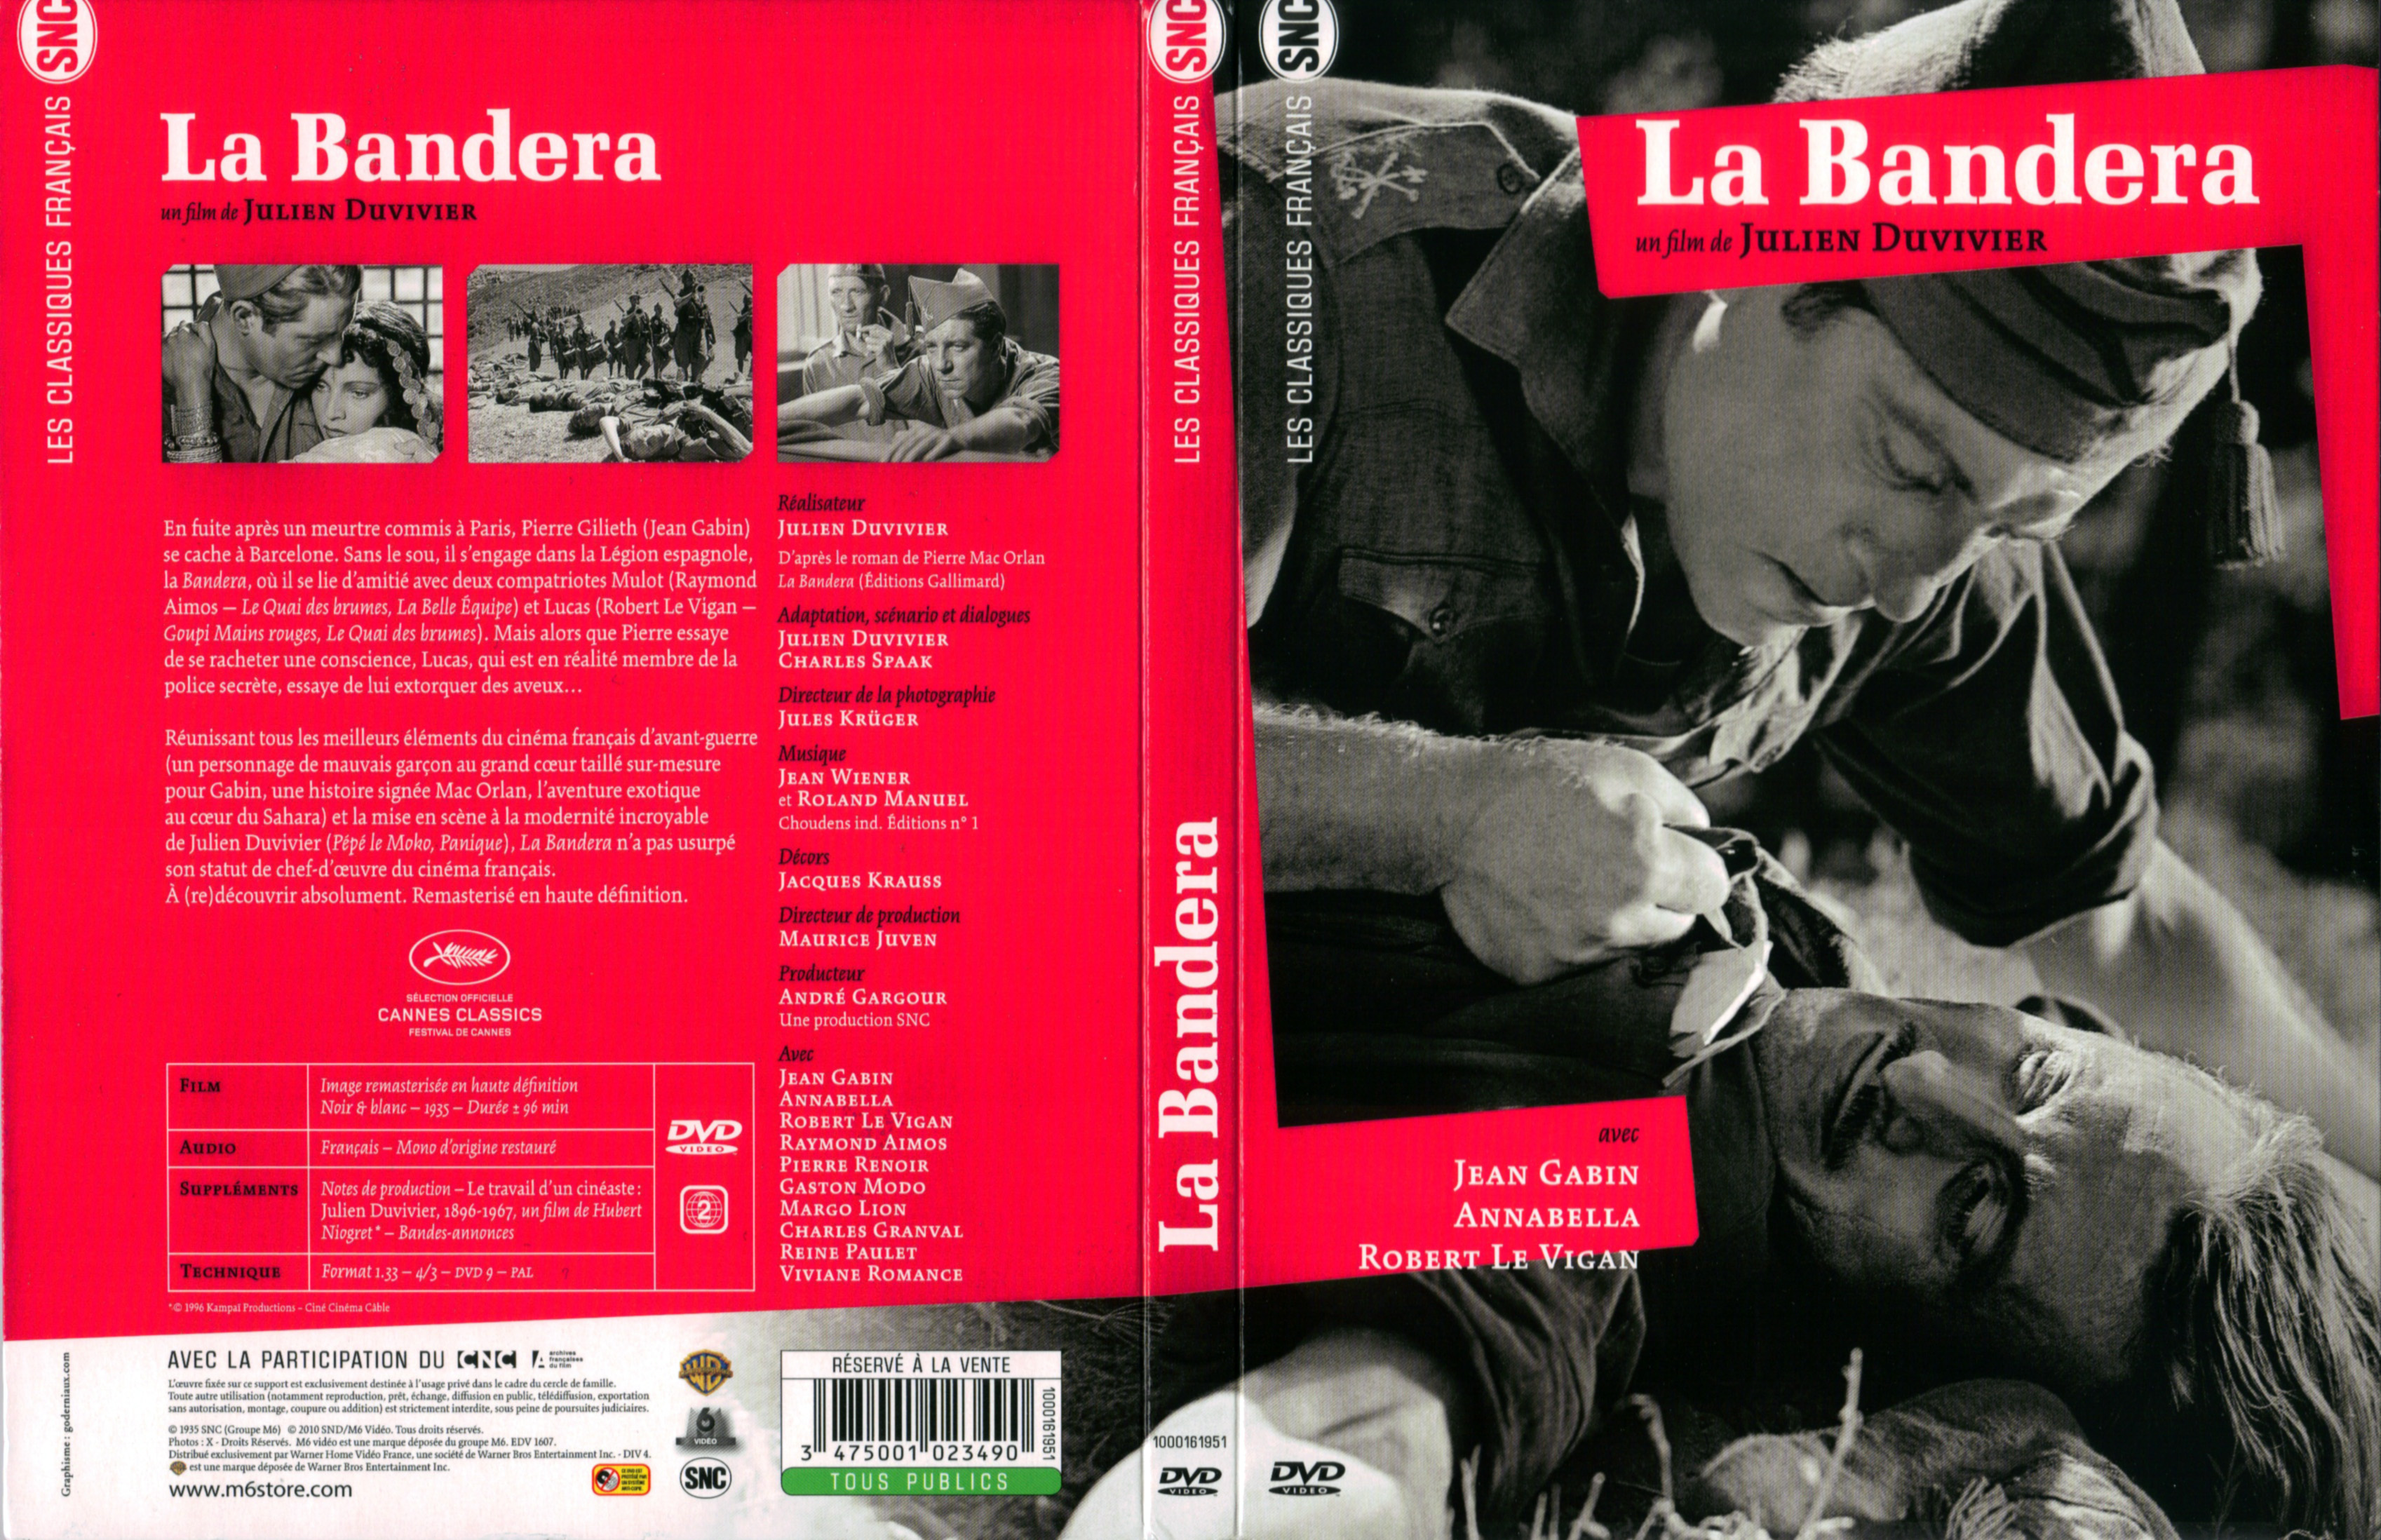 Jaquette DVD La bandera v2